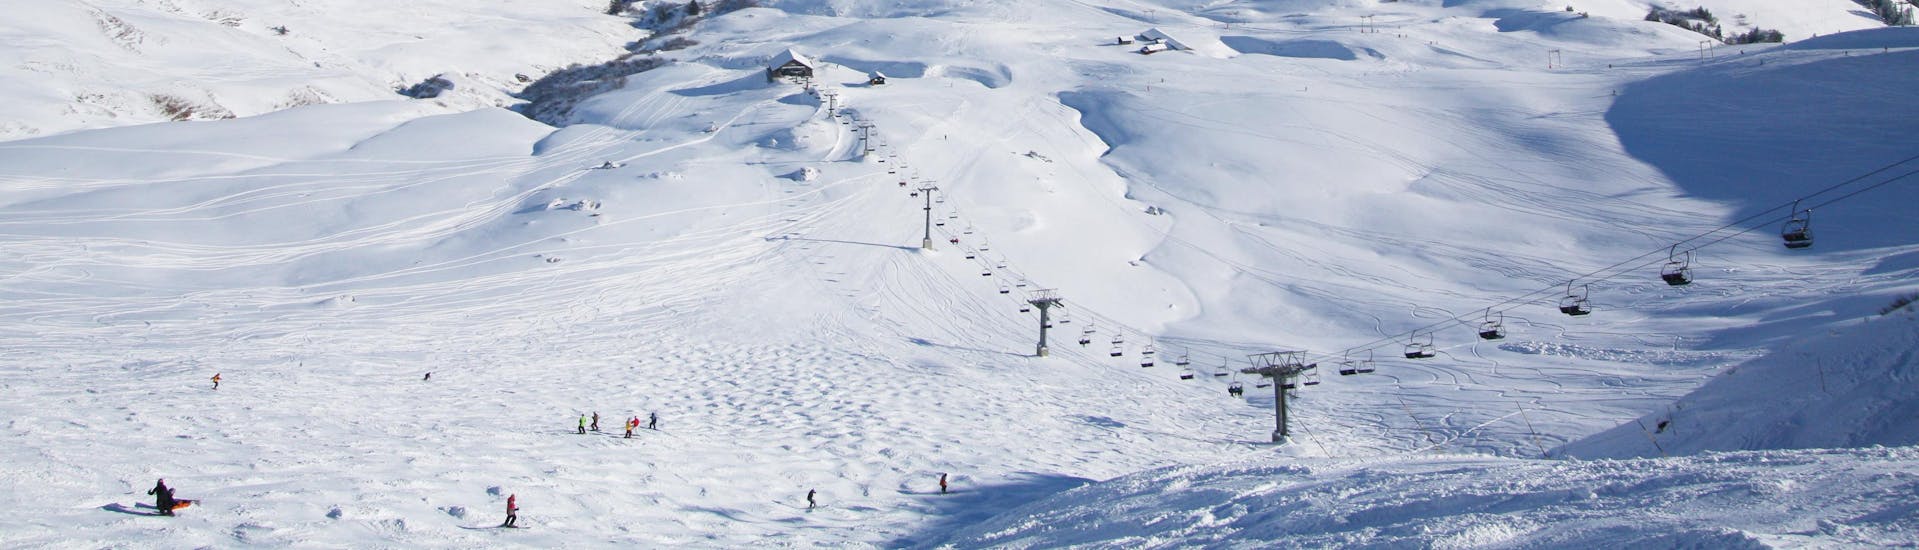 Une vue des pistes enneigées de la station de ski suisse des Crosets où les écoles de ski locales offrent un large éventail de cours de ski à ceux qui veulent apprendre le ski.